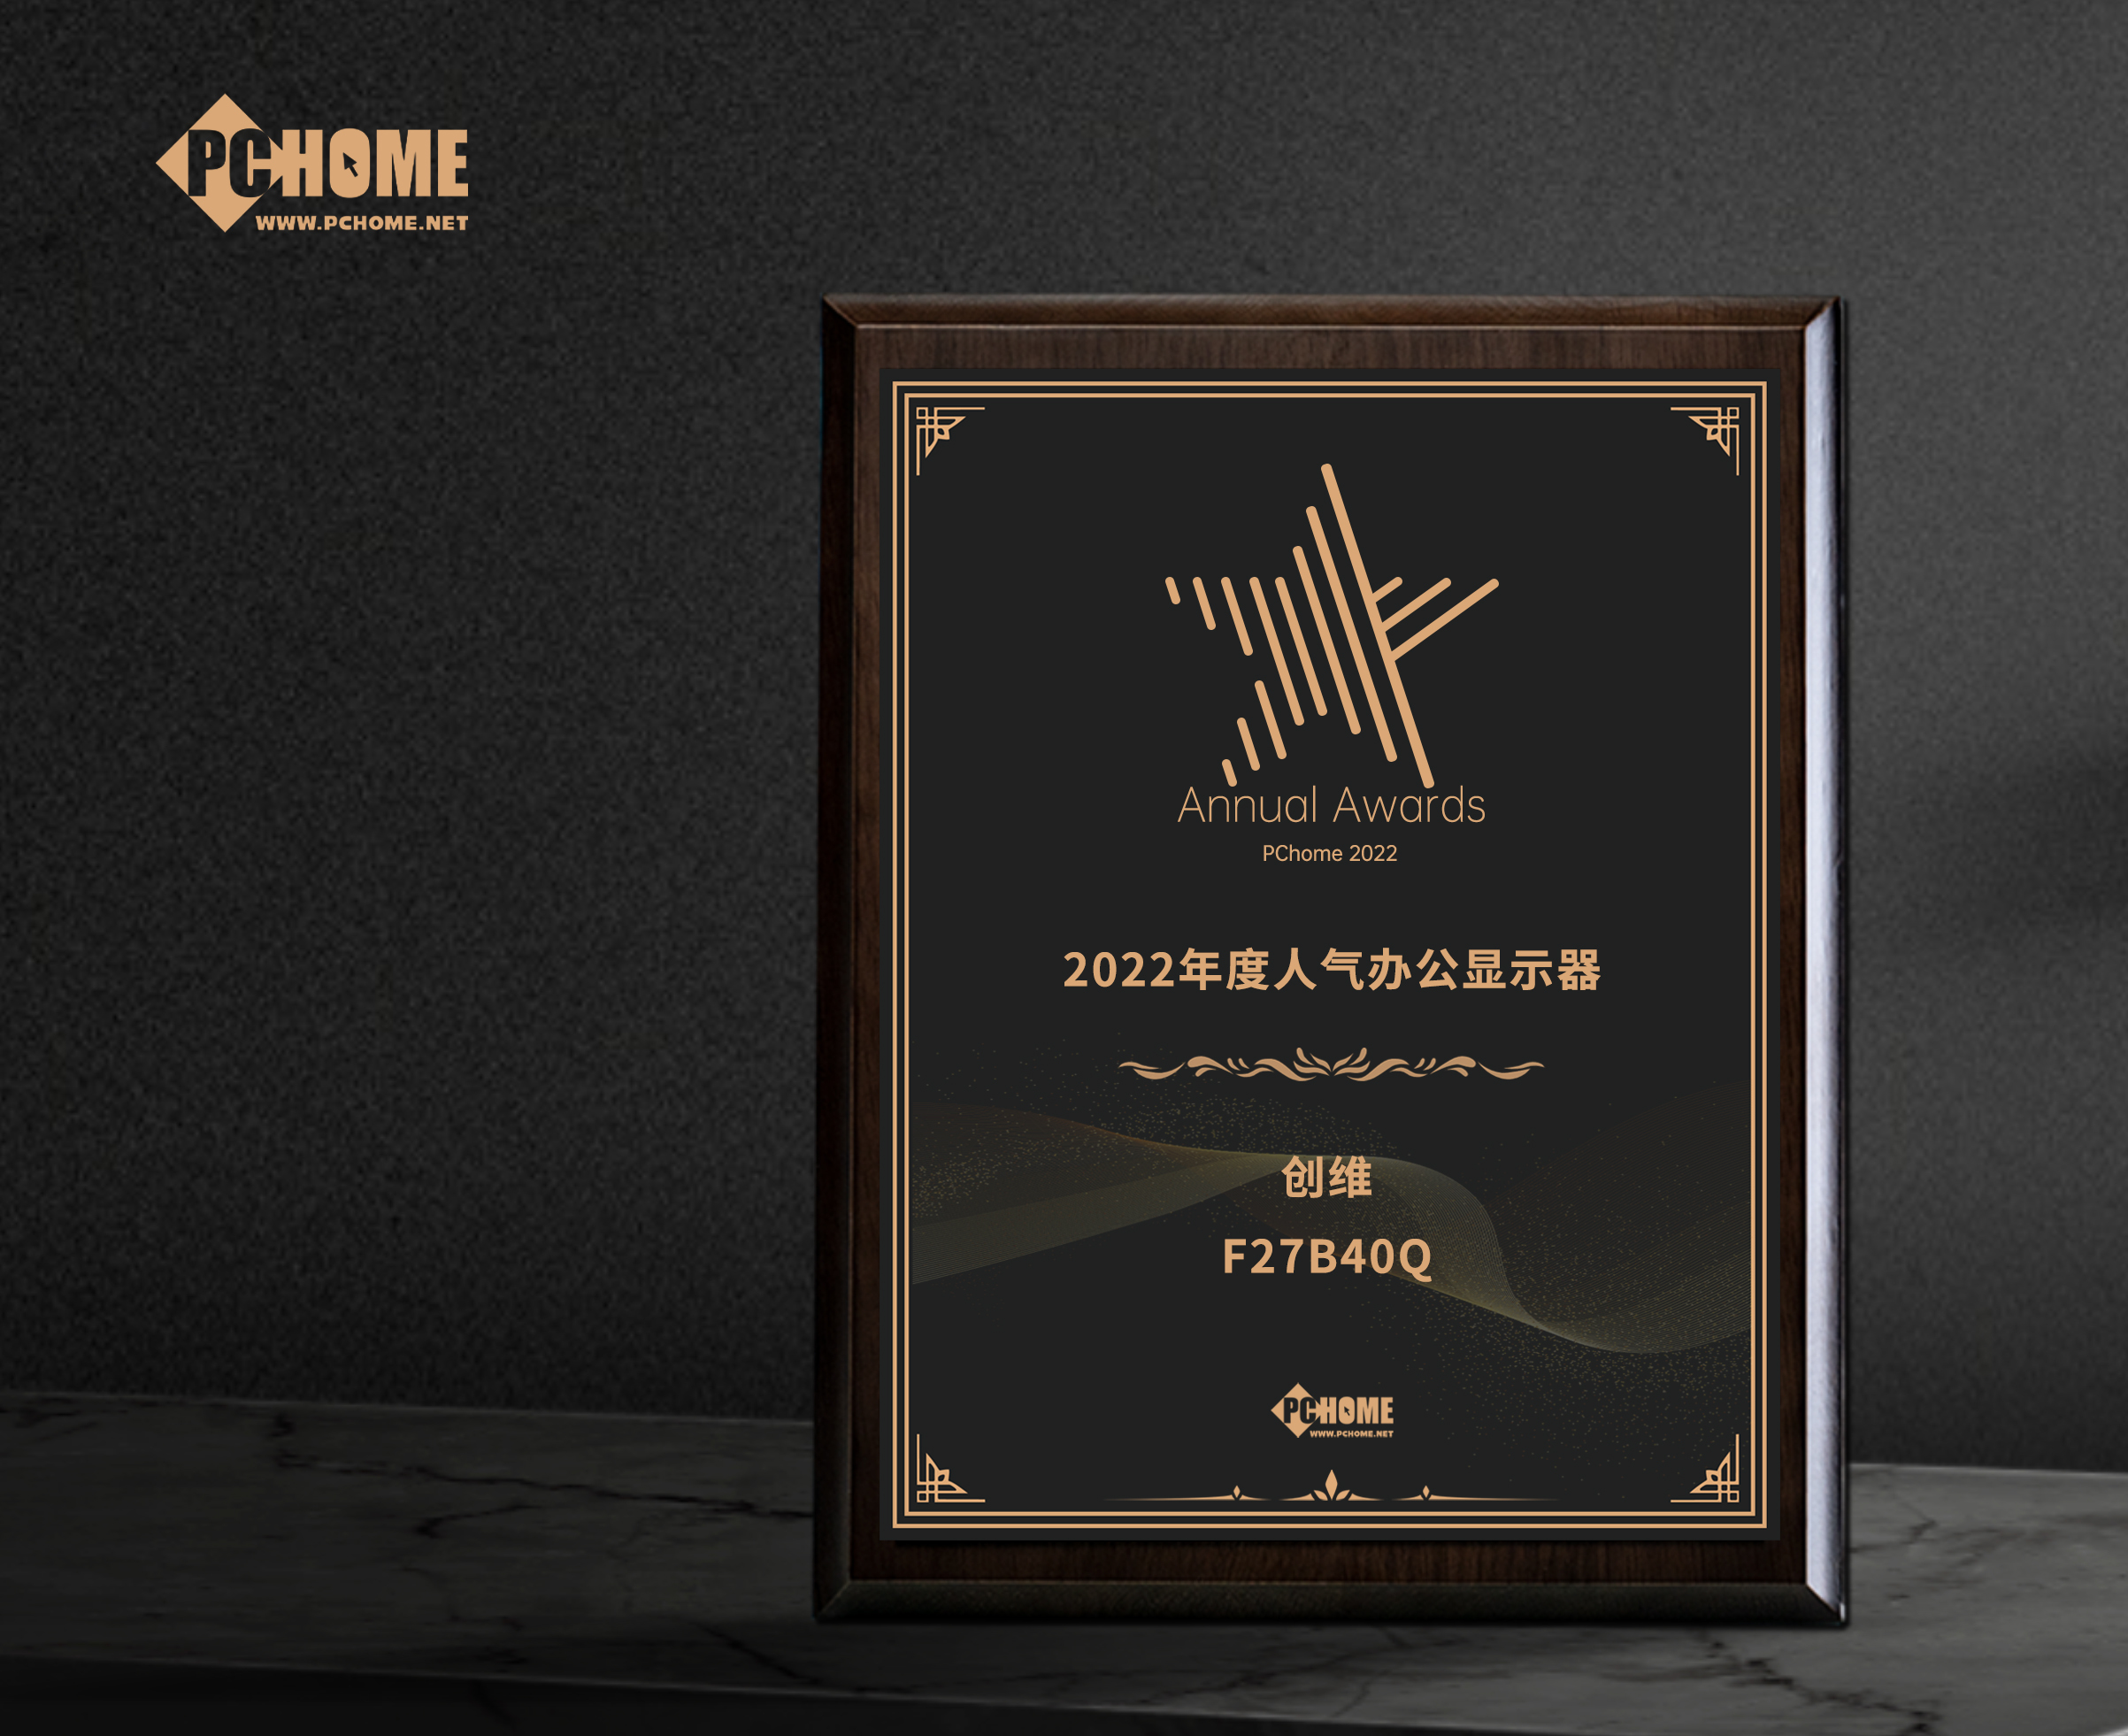 遂寧市創維F27B40Q獲得PChome2022年度人氣辦公顯示器獎項